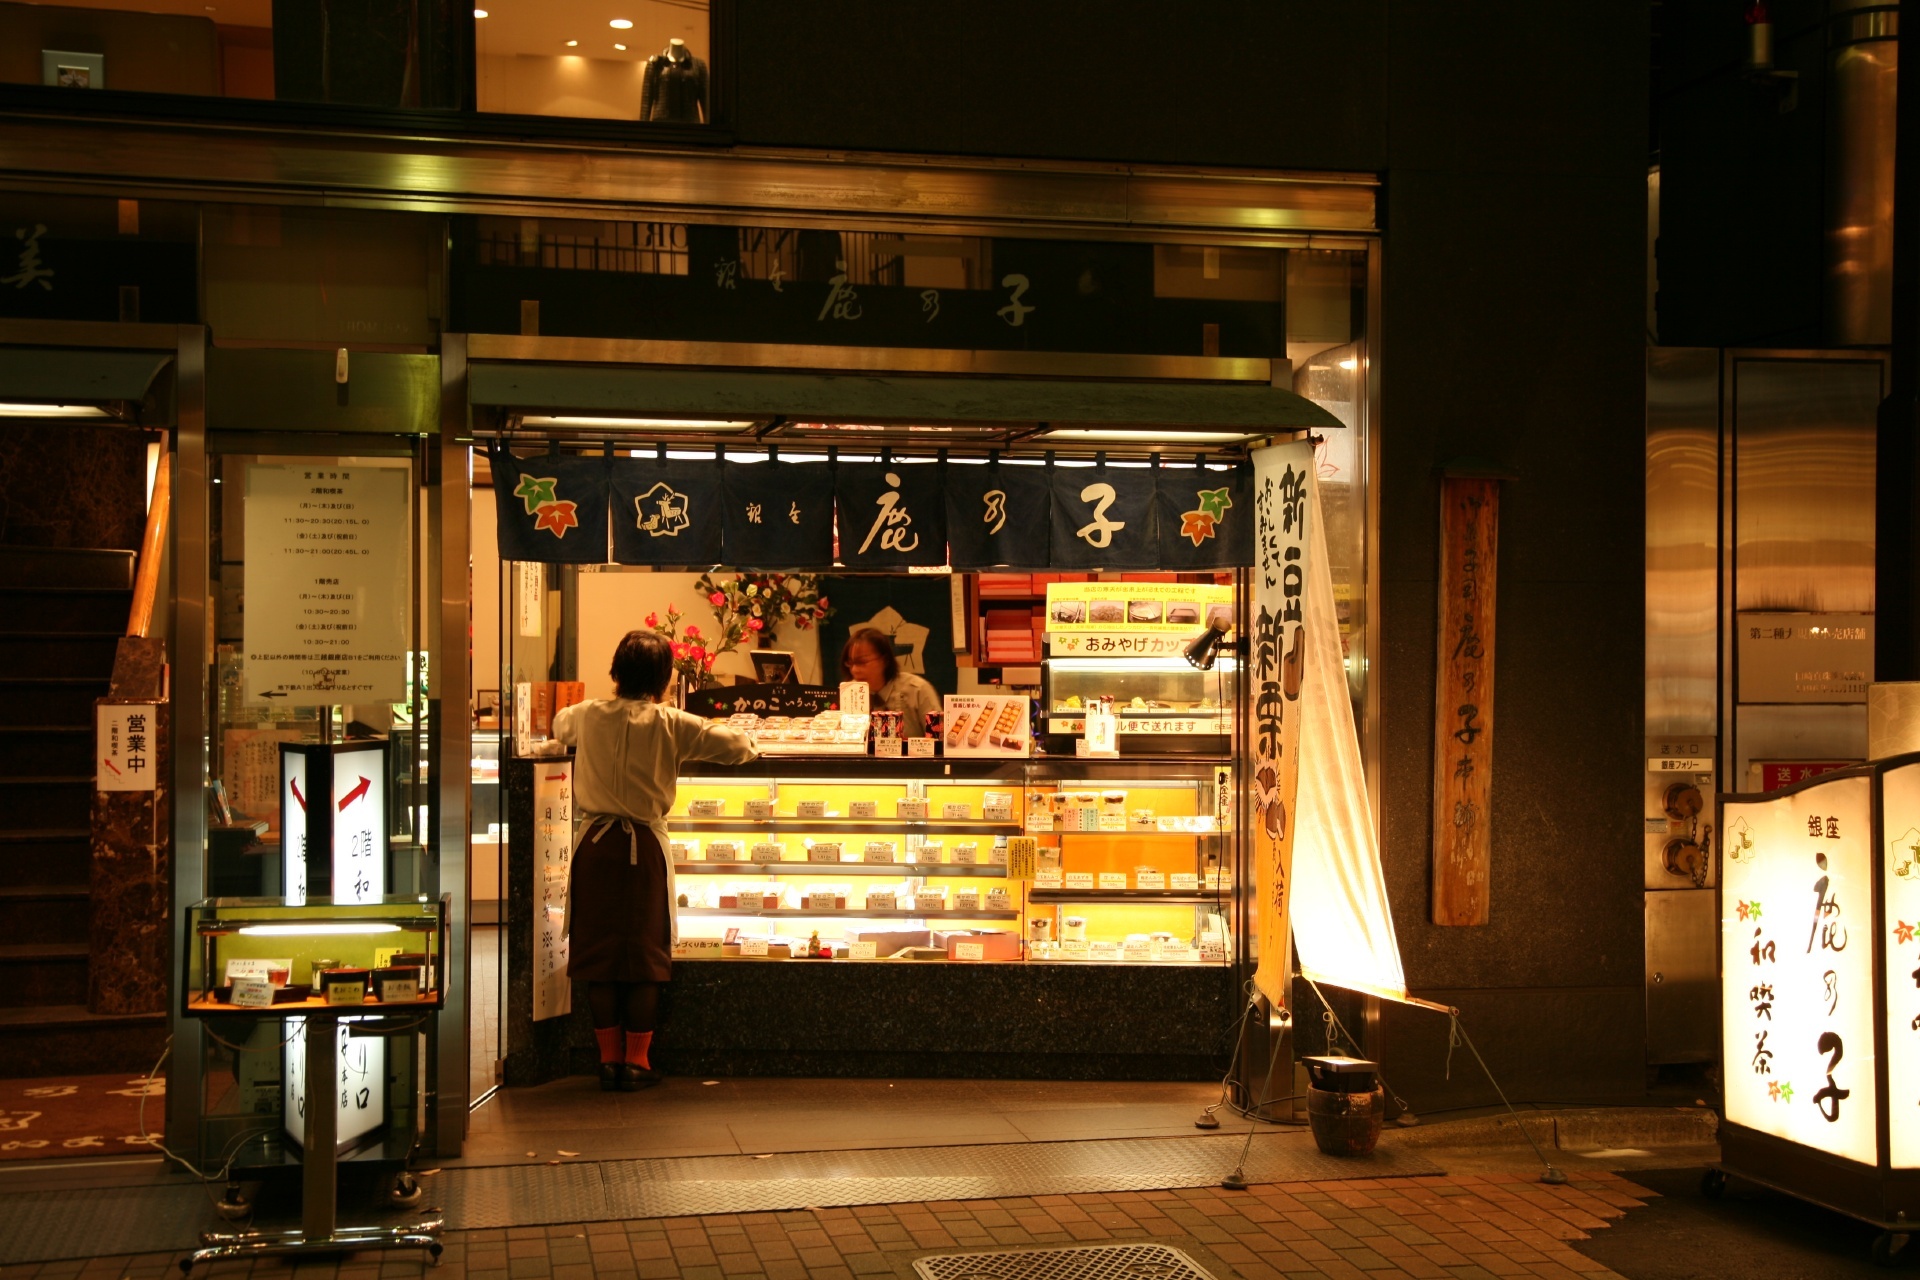 Ginza at night